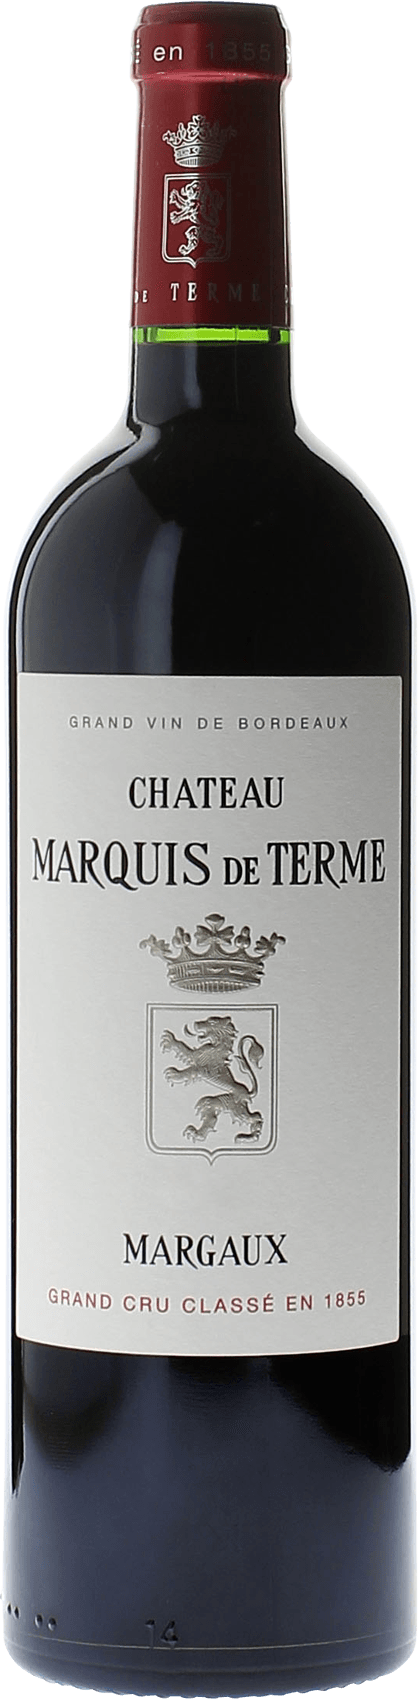 Marquis de terme 1993 4me Grand cru class Margaux, Bordeaux rouge